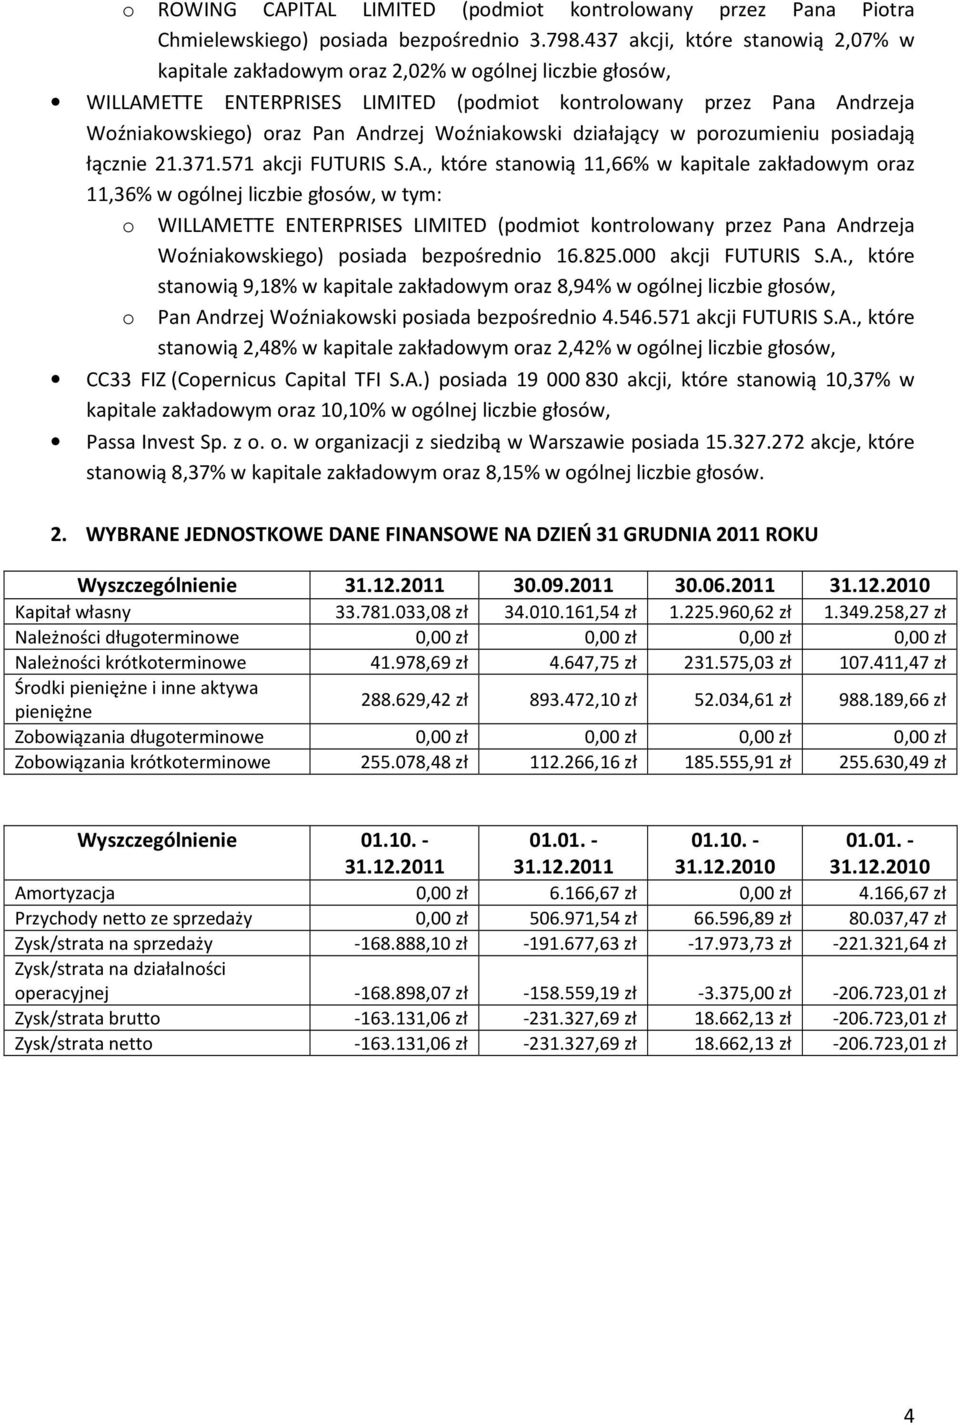 Woźniakowski działający w porozumieniu posiadają łącznie 21.371.571 akcji FUTURIS S.A.